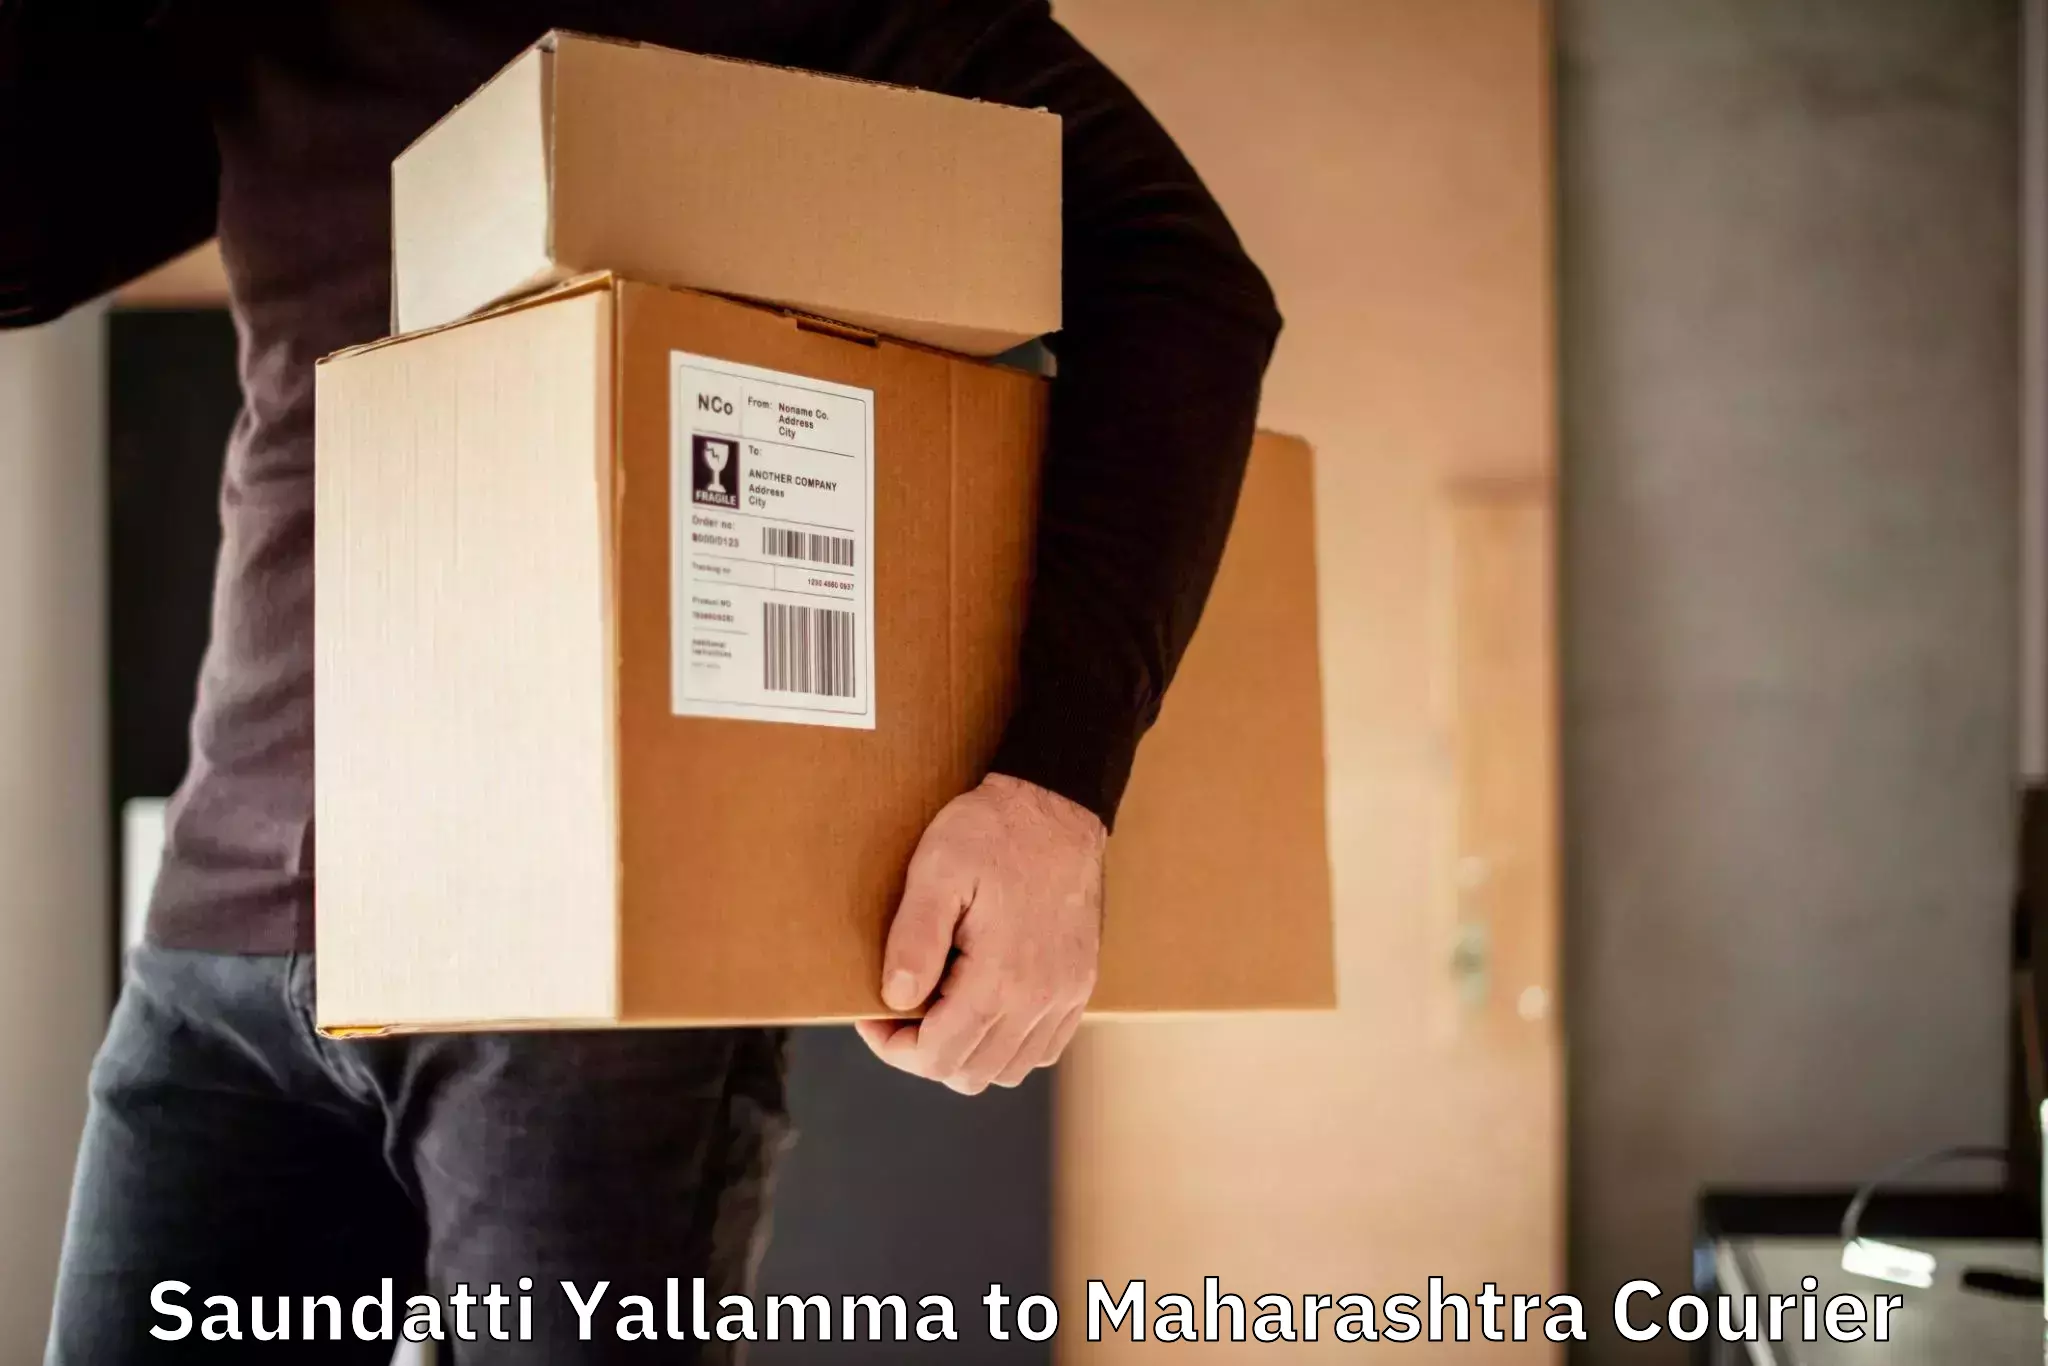 Reliable delivery network Saundatti Yallamma to Chalisgaon